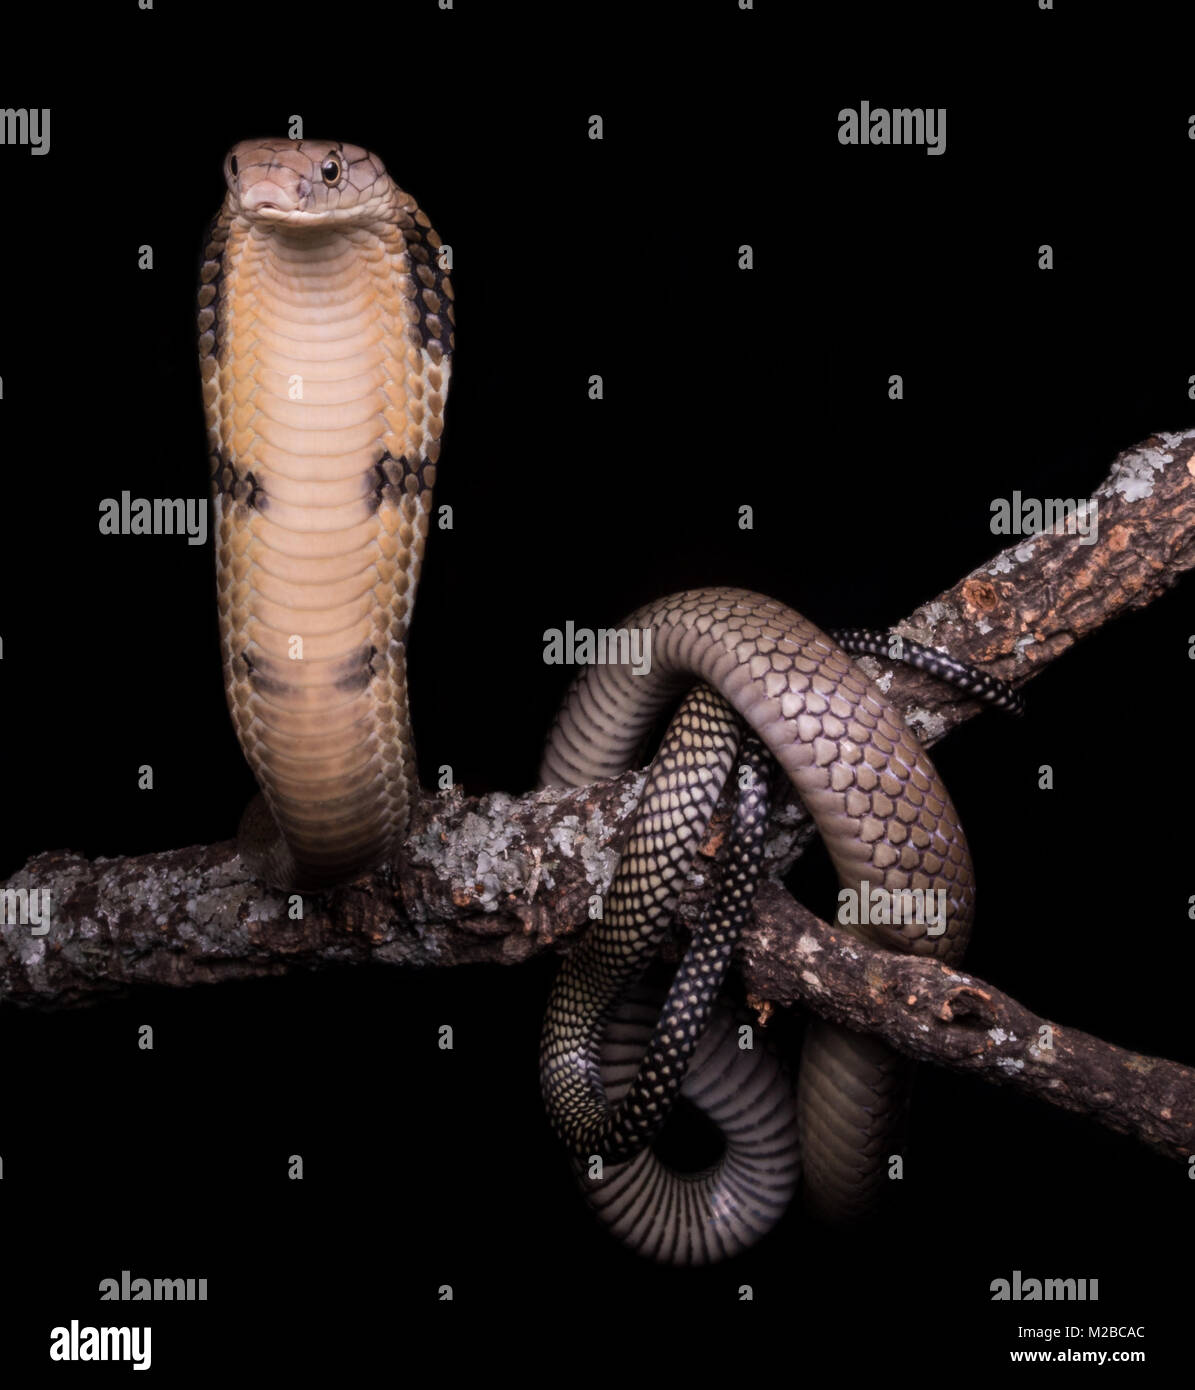 King cobra Foto Stock